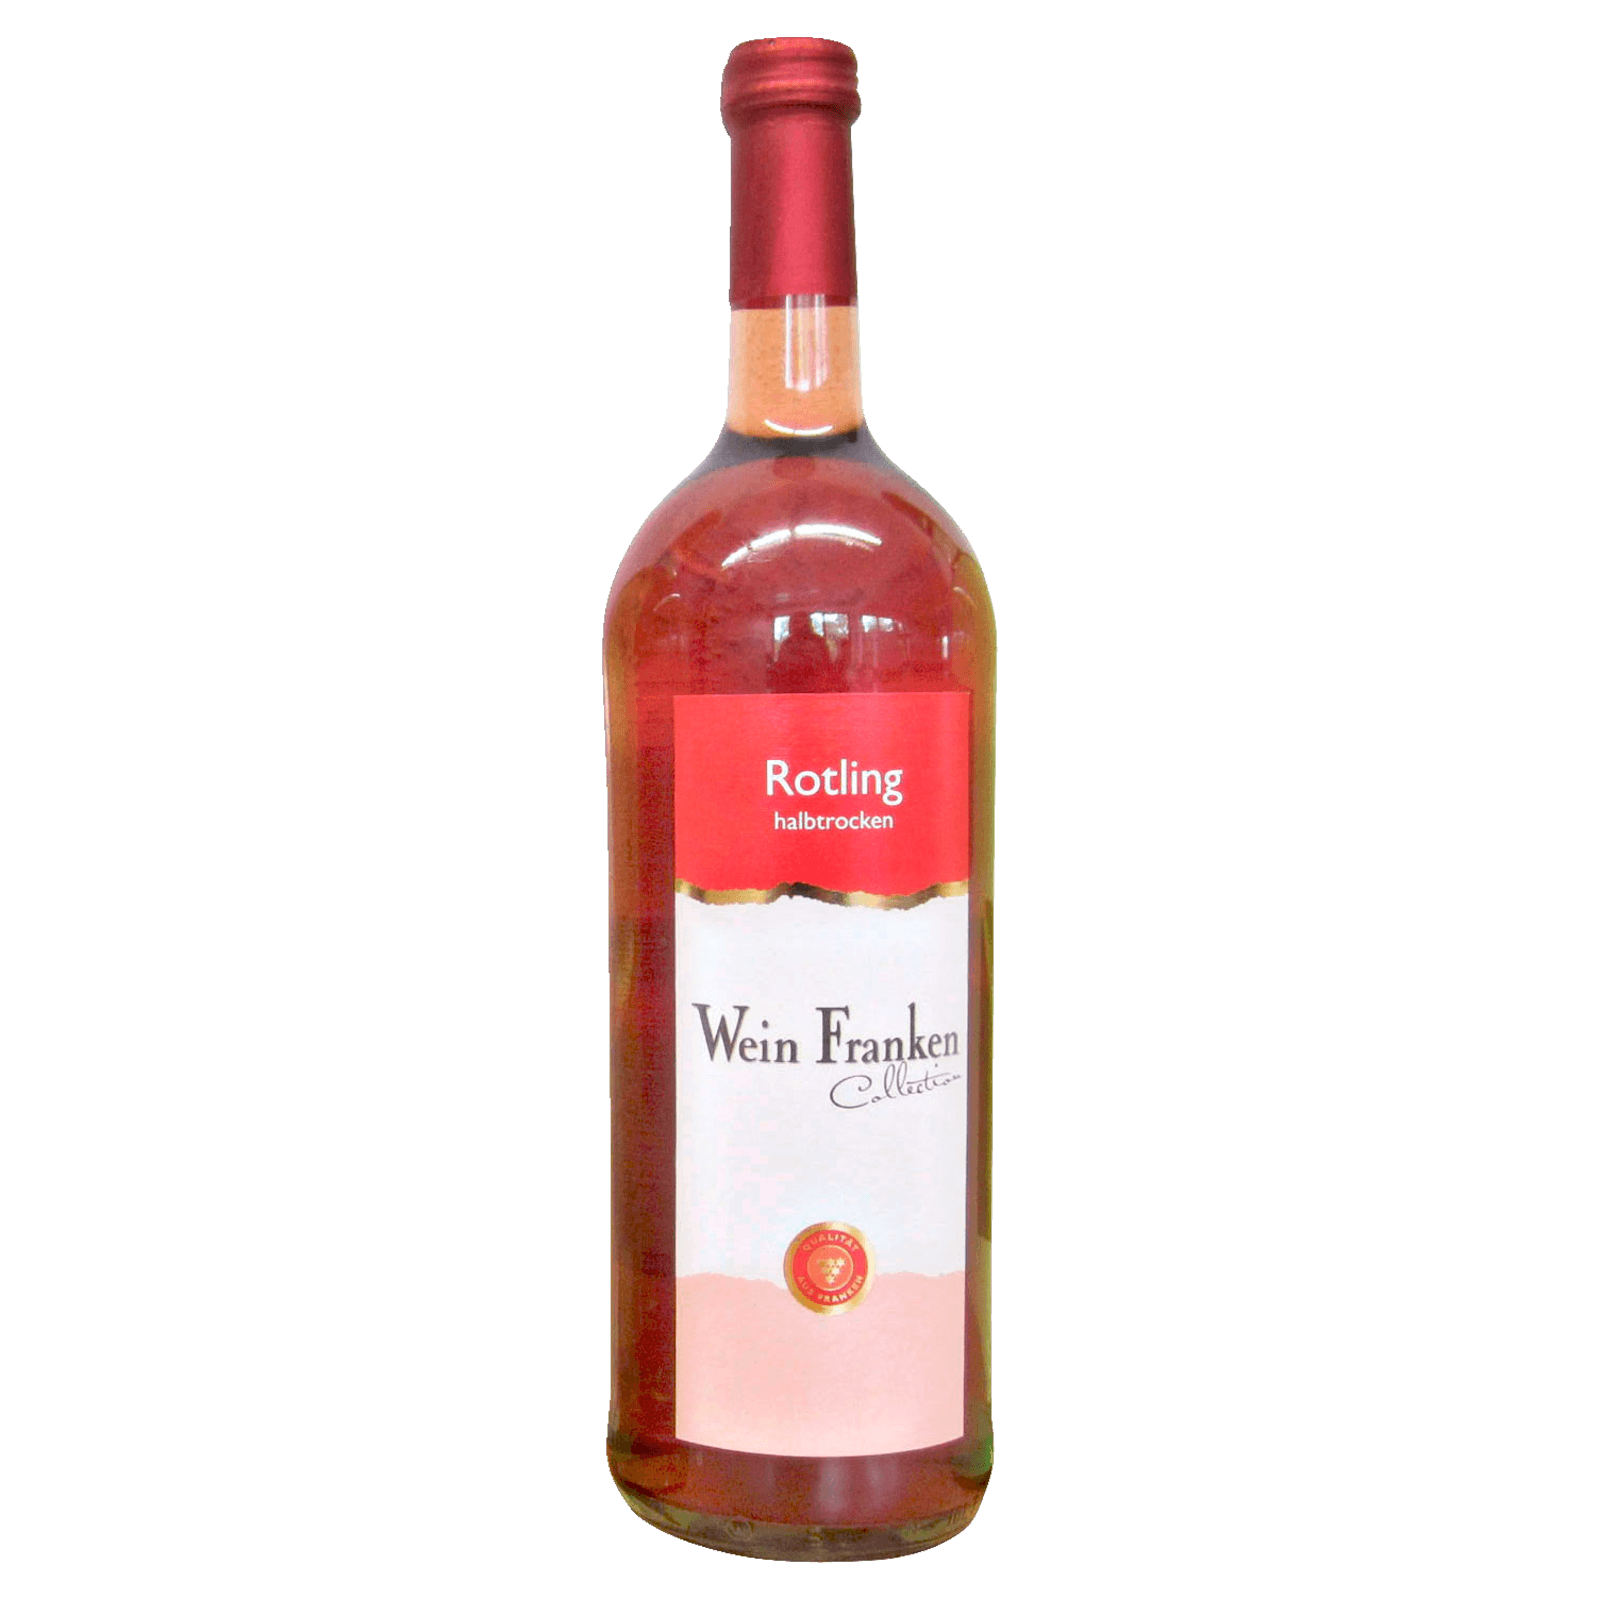 Wein Franken Rosé Rotling QbA halbtrocken 1l bei REWE online bestellen!